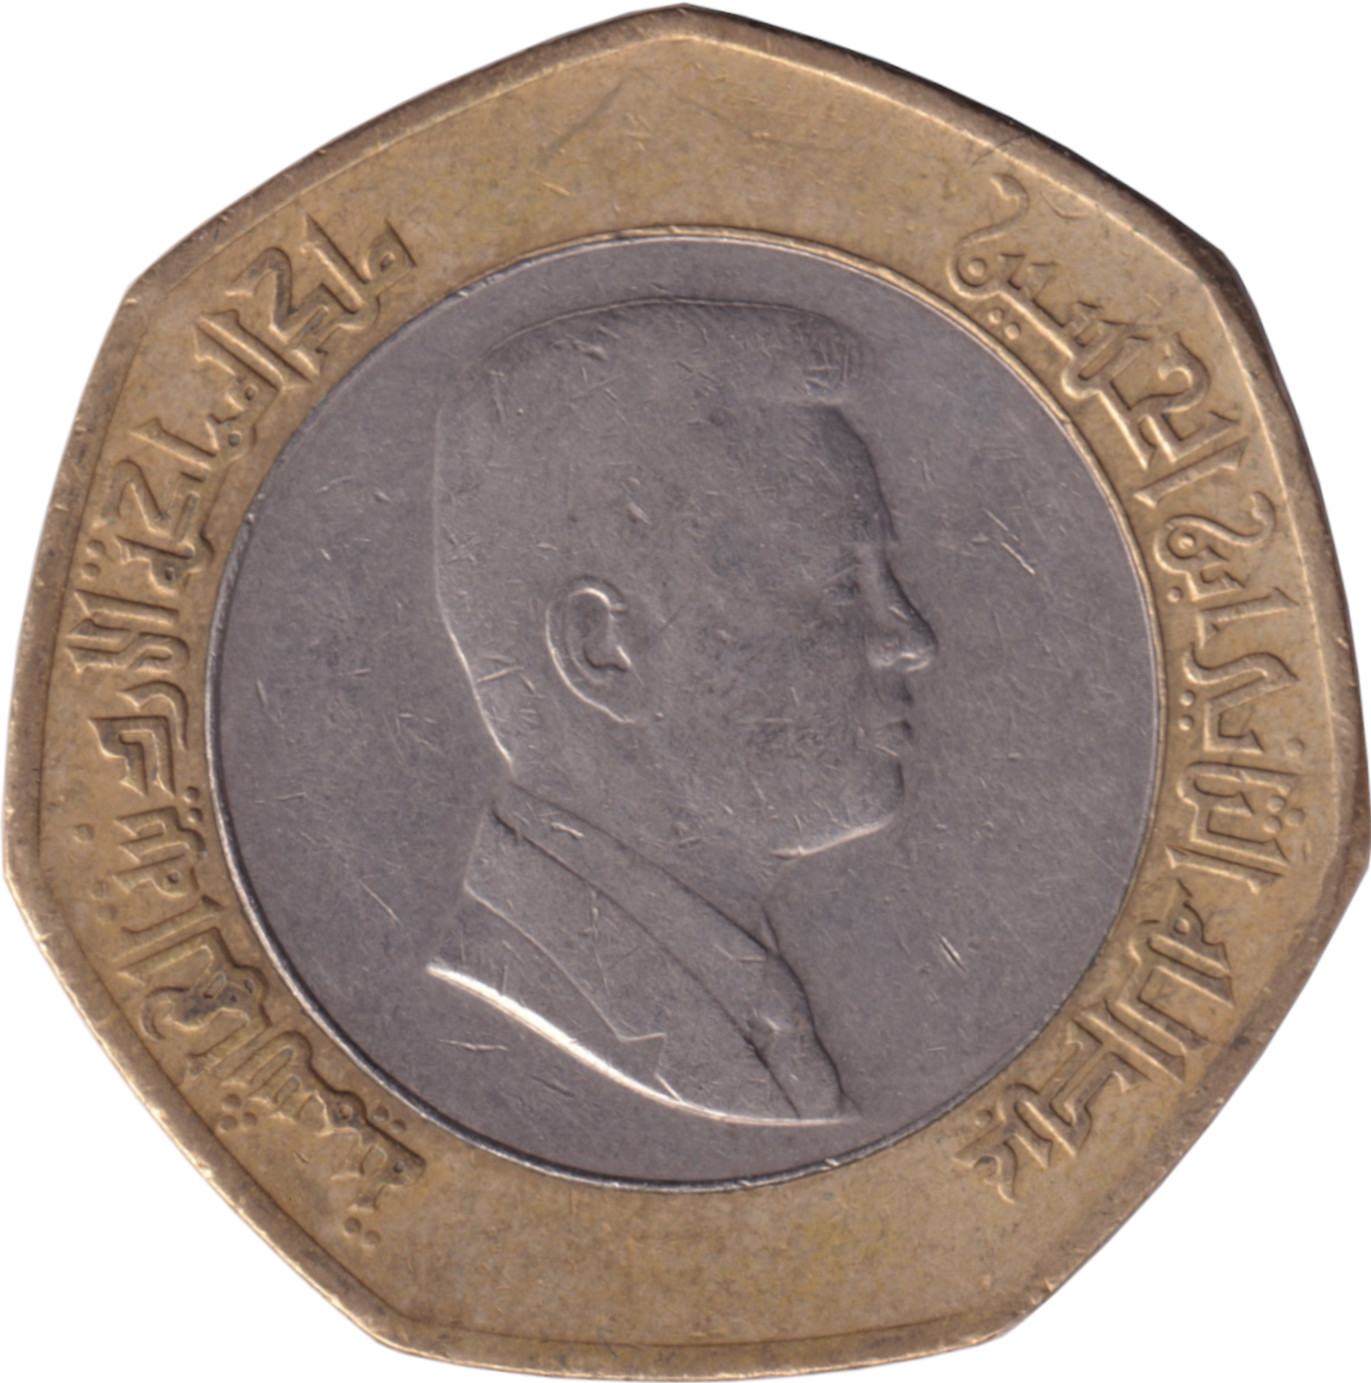 1/2 dinar - Abdullah II